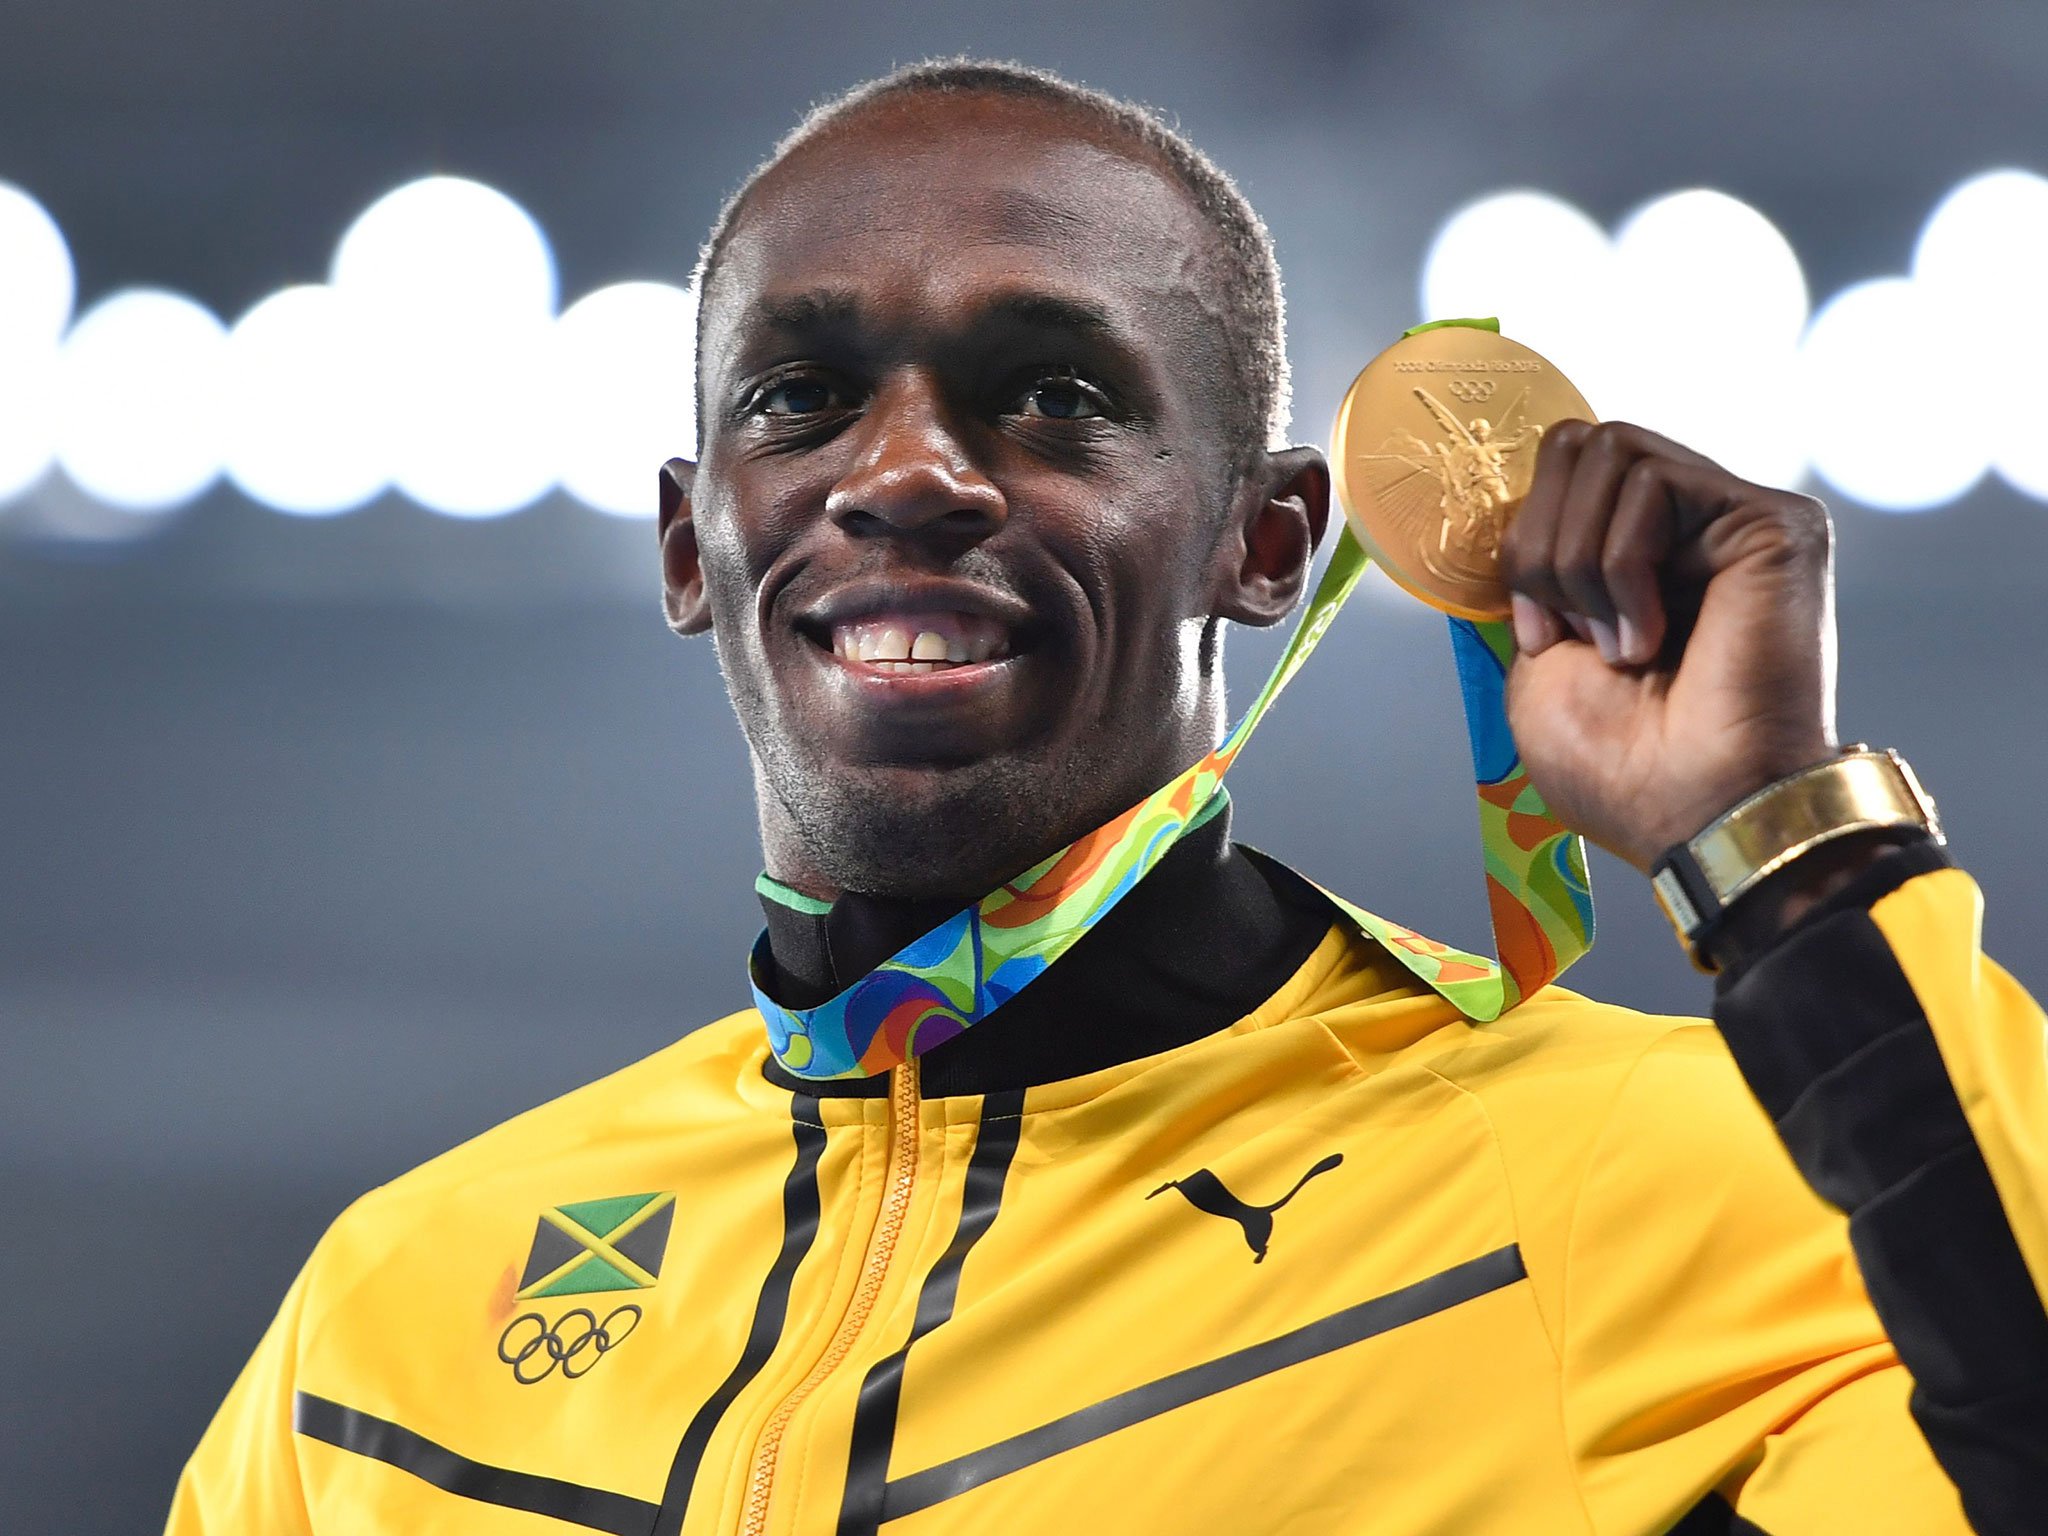 Stopama najbržeg: 10 inspirativnih izjava Usaina Bolta